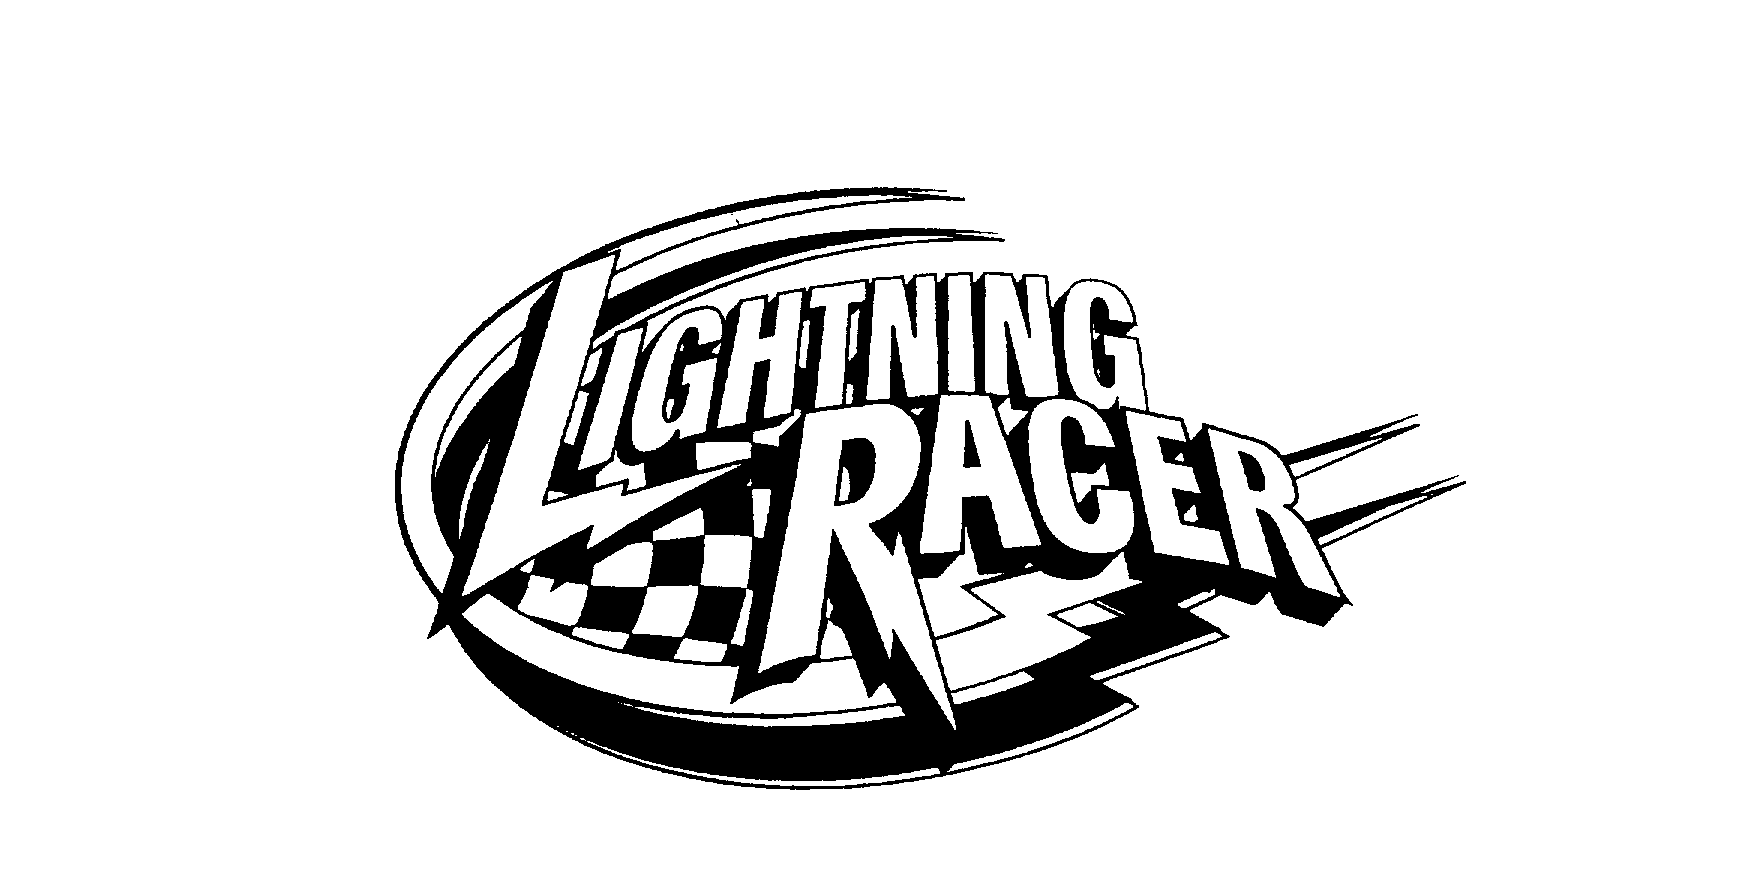  LIGHTNING RACER